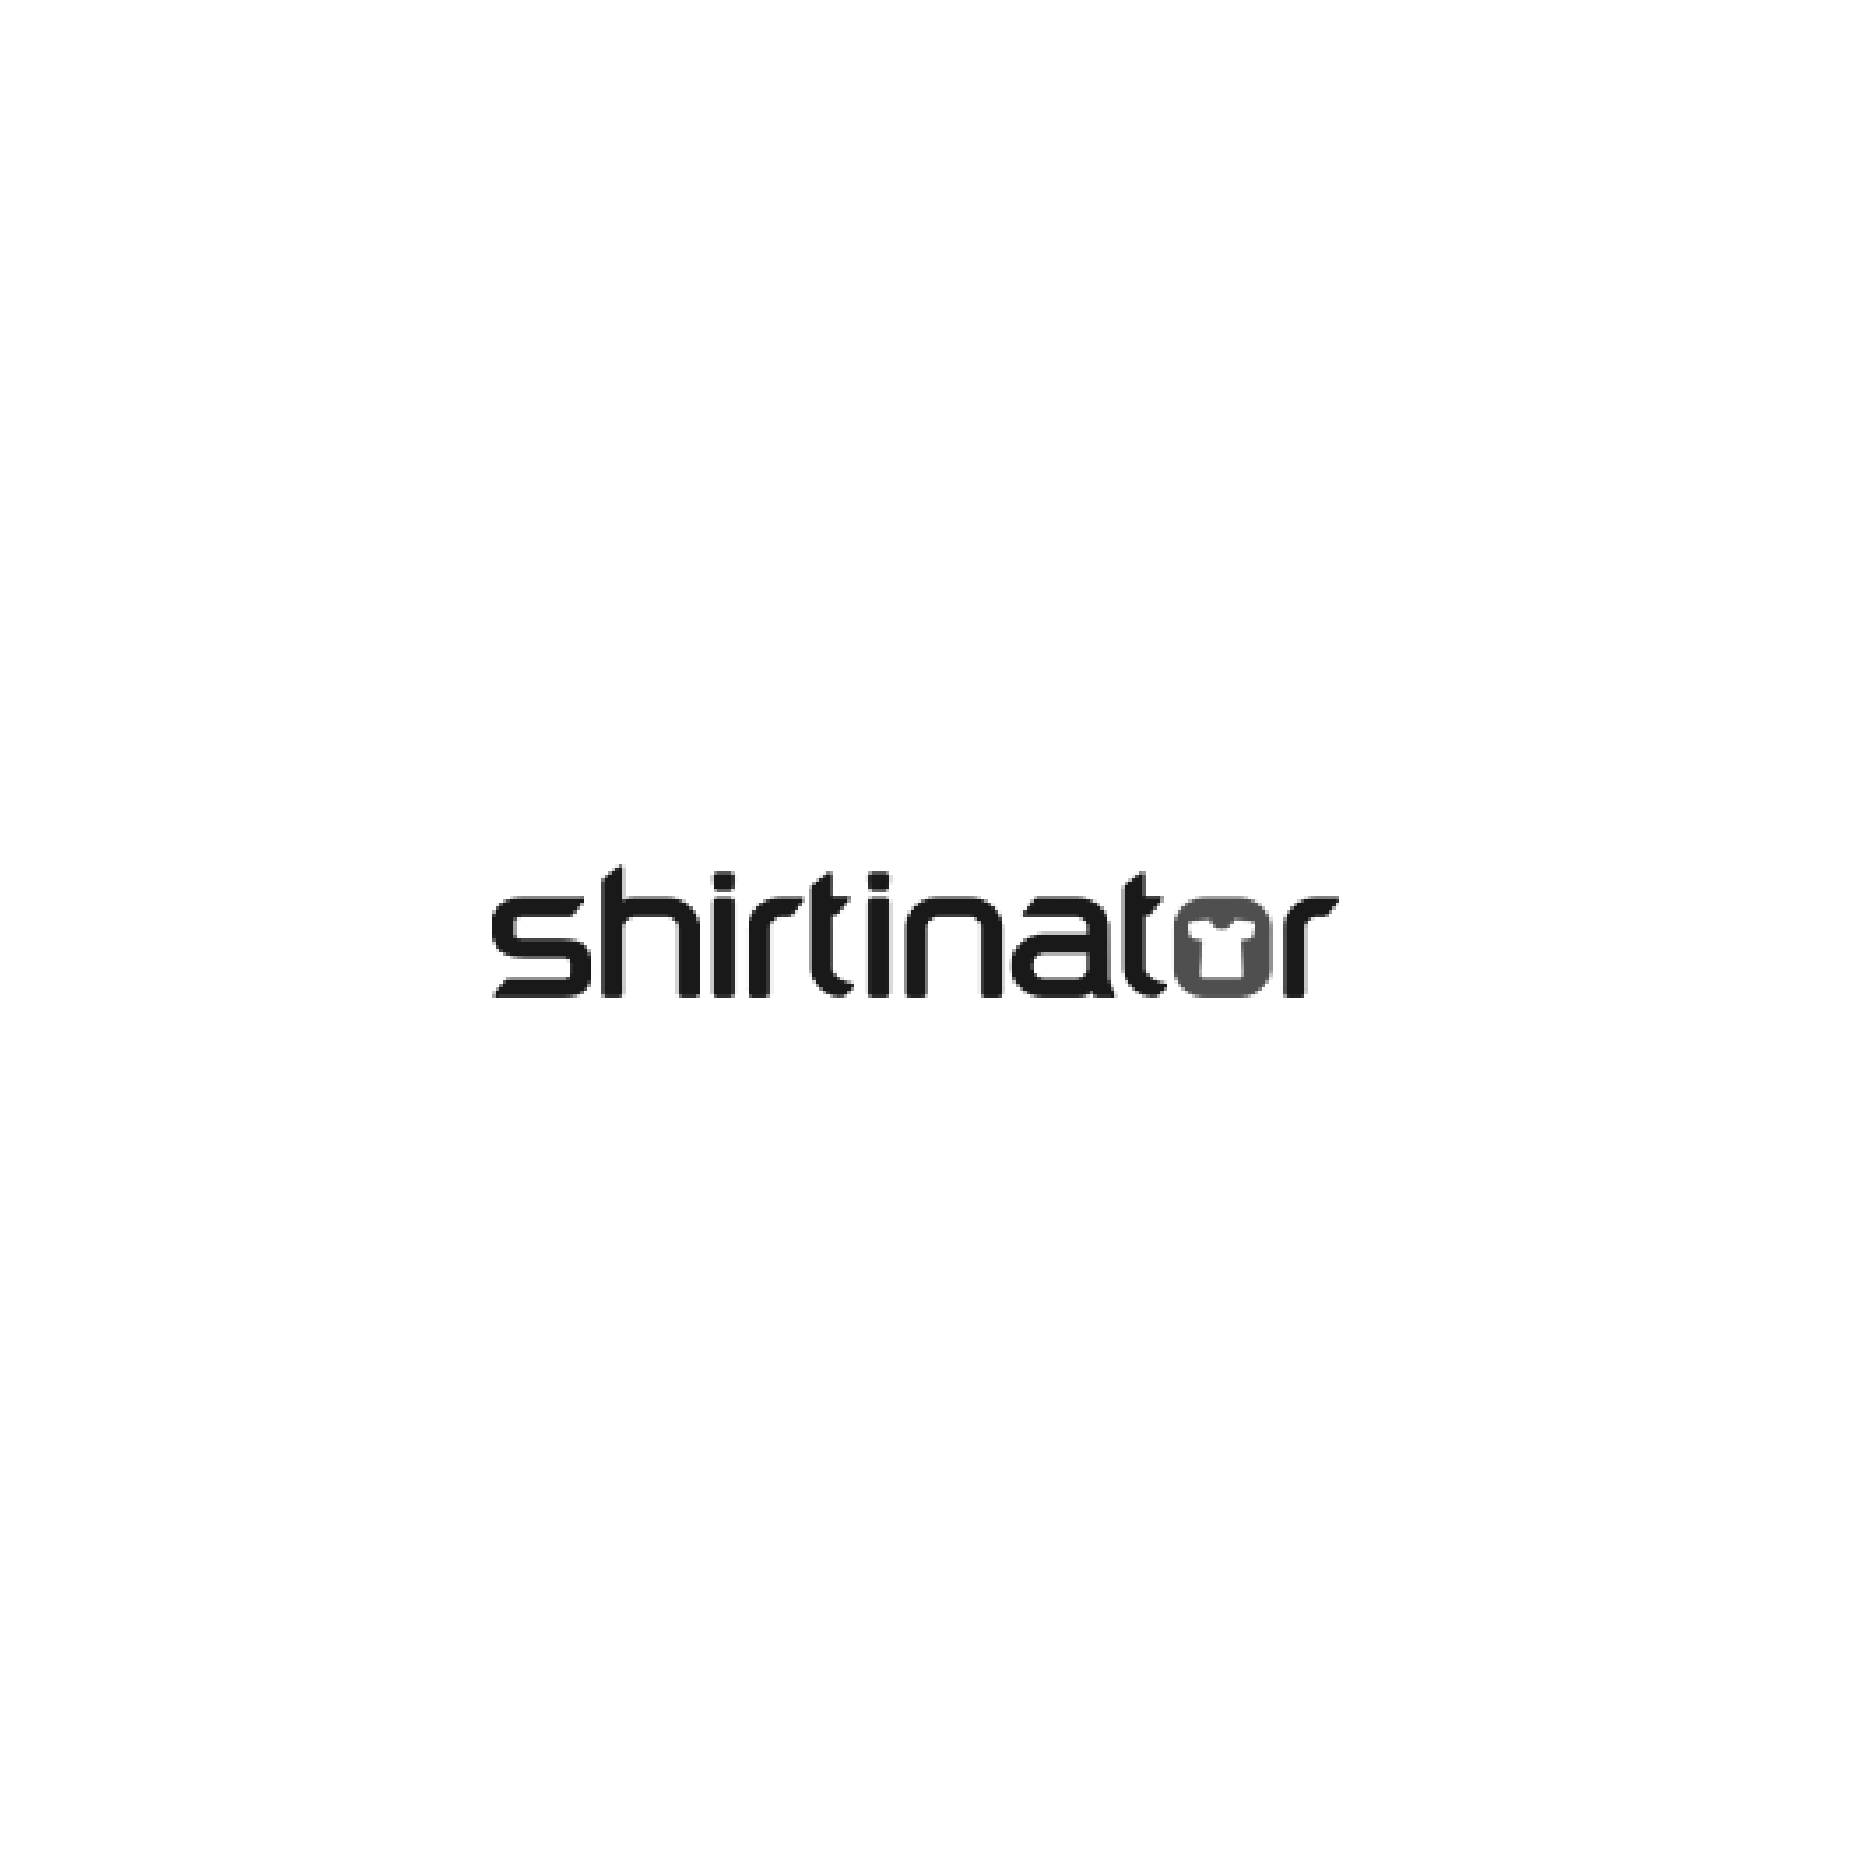 shirtinator-01.png